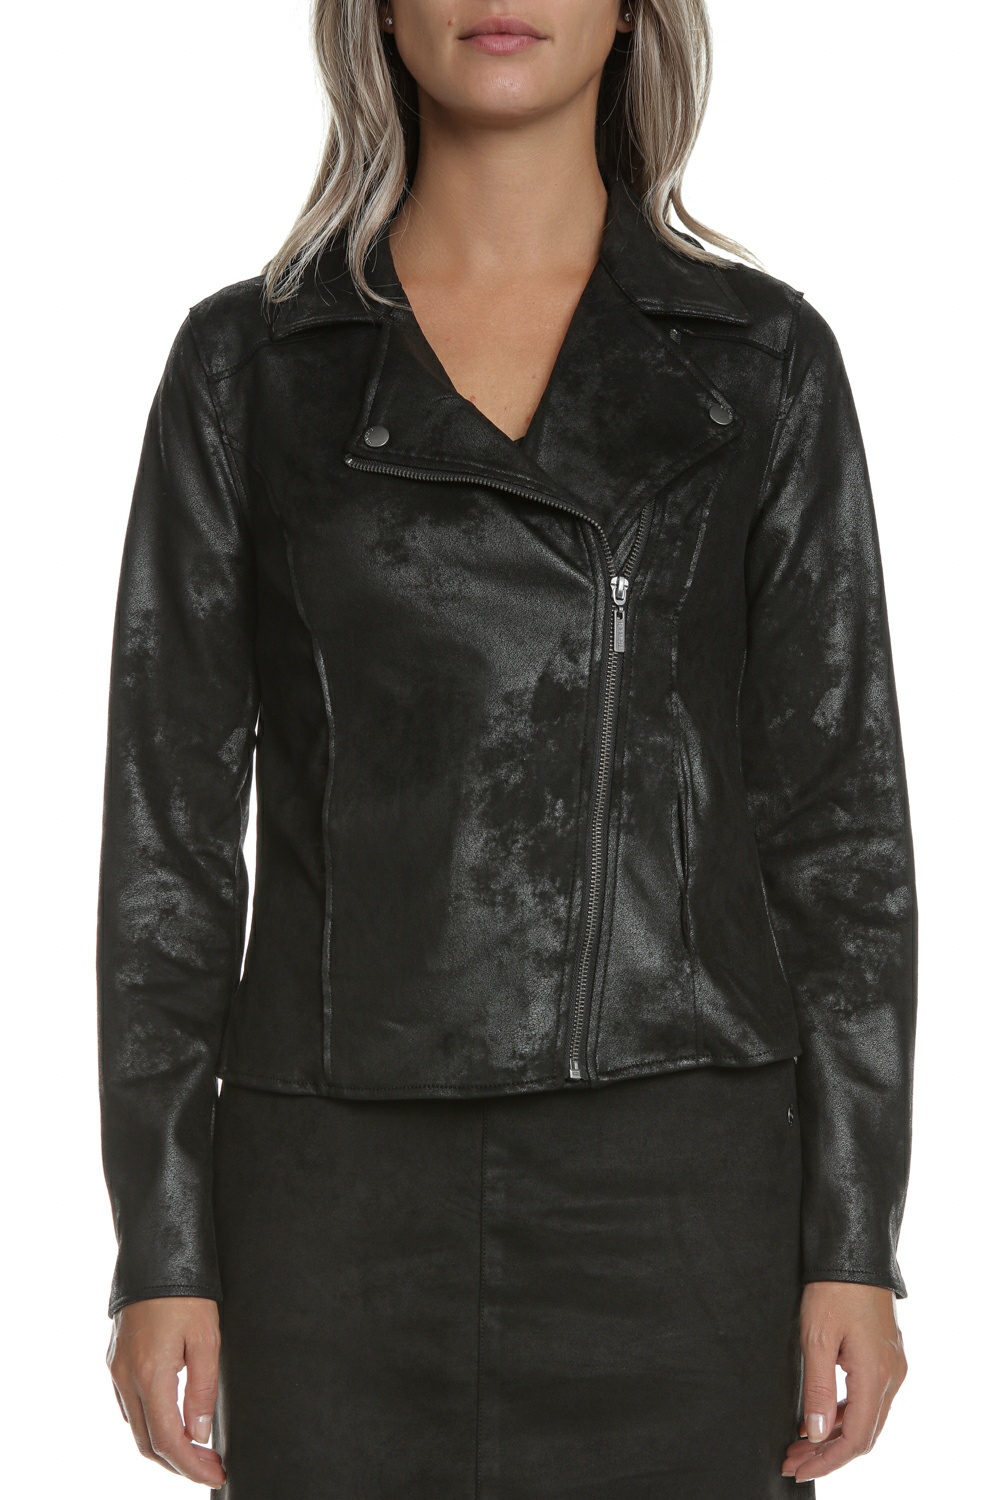 Γυναικεία/Ρούχα/Πανωφόρια/Τζάκετς GARCIA JEANS - Γυναικείο jacket GARCIA JEANS μαύρο